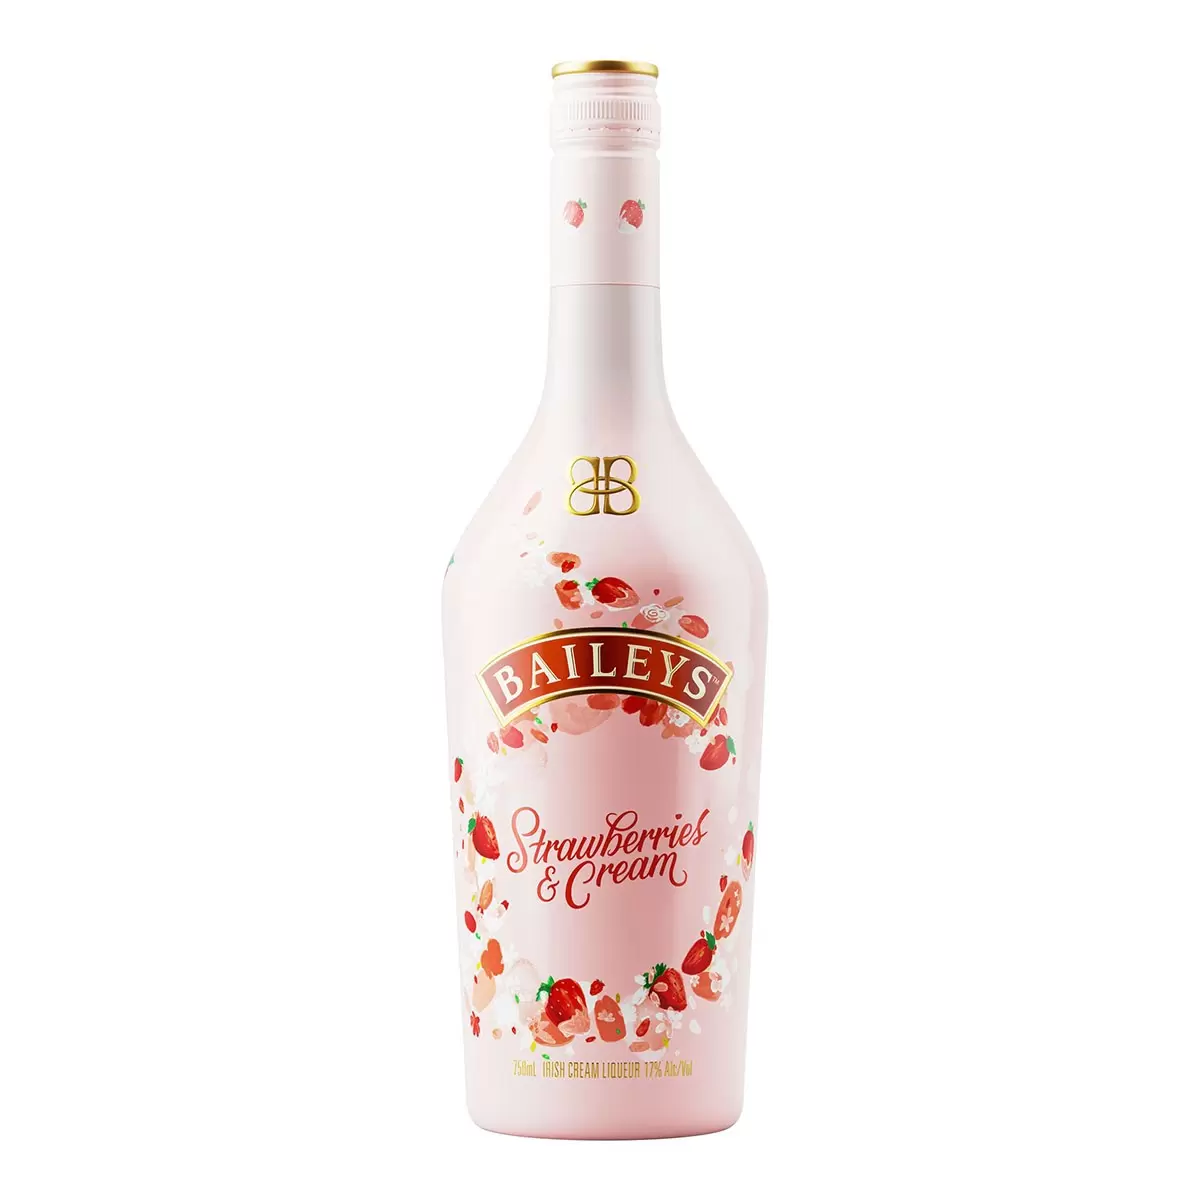 貝禮詩 香甜奶酒草莓風味 750毫升